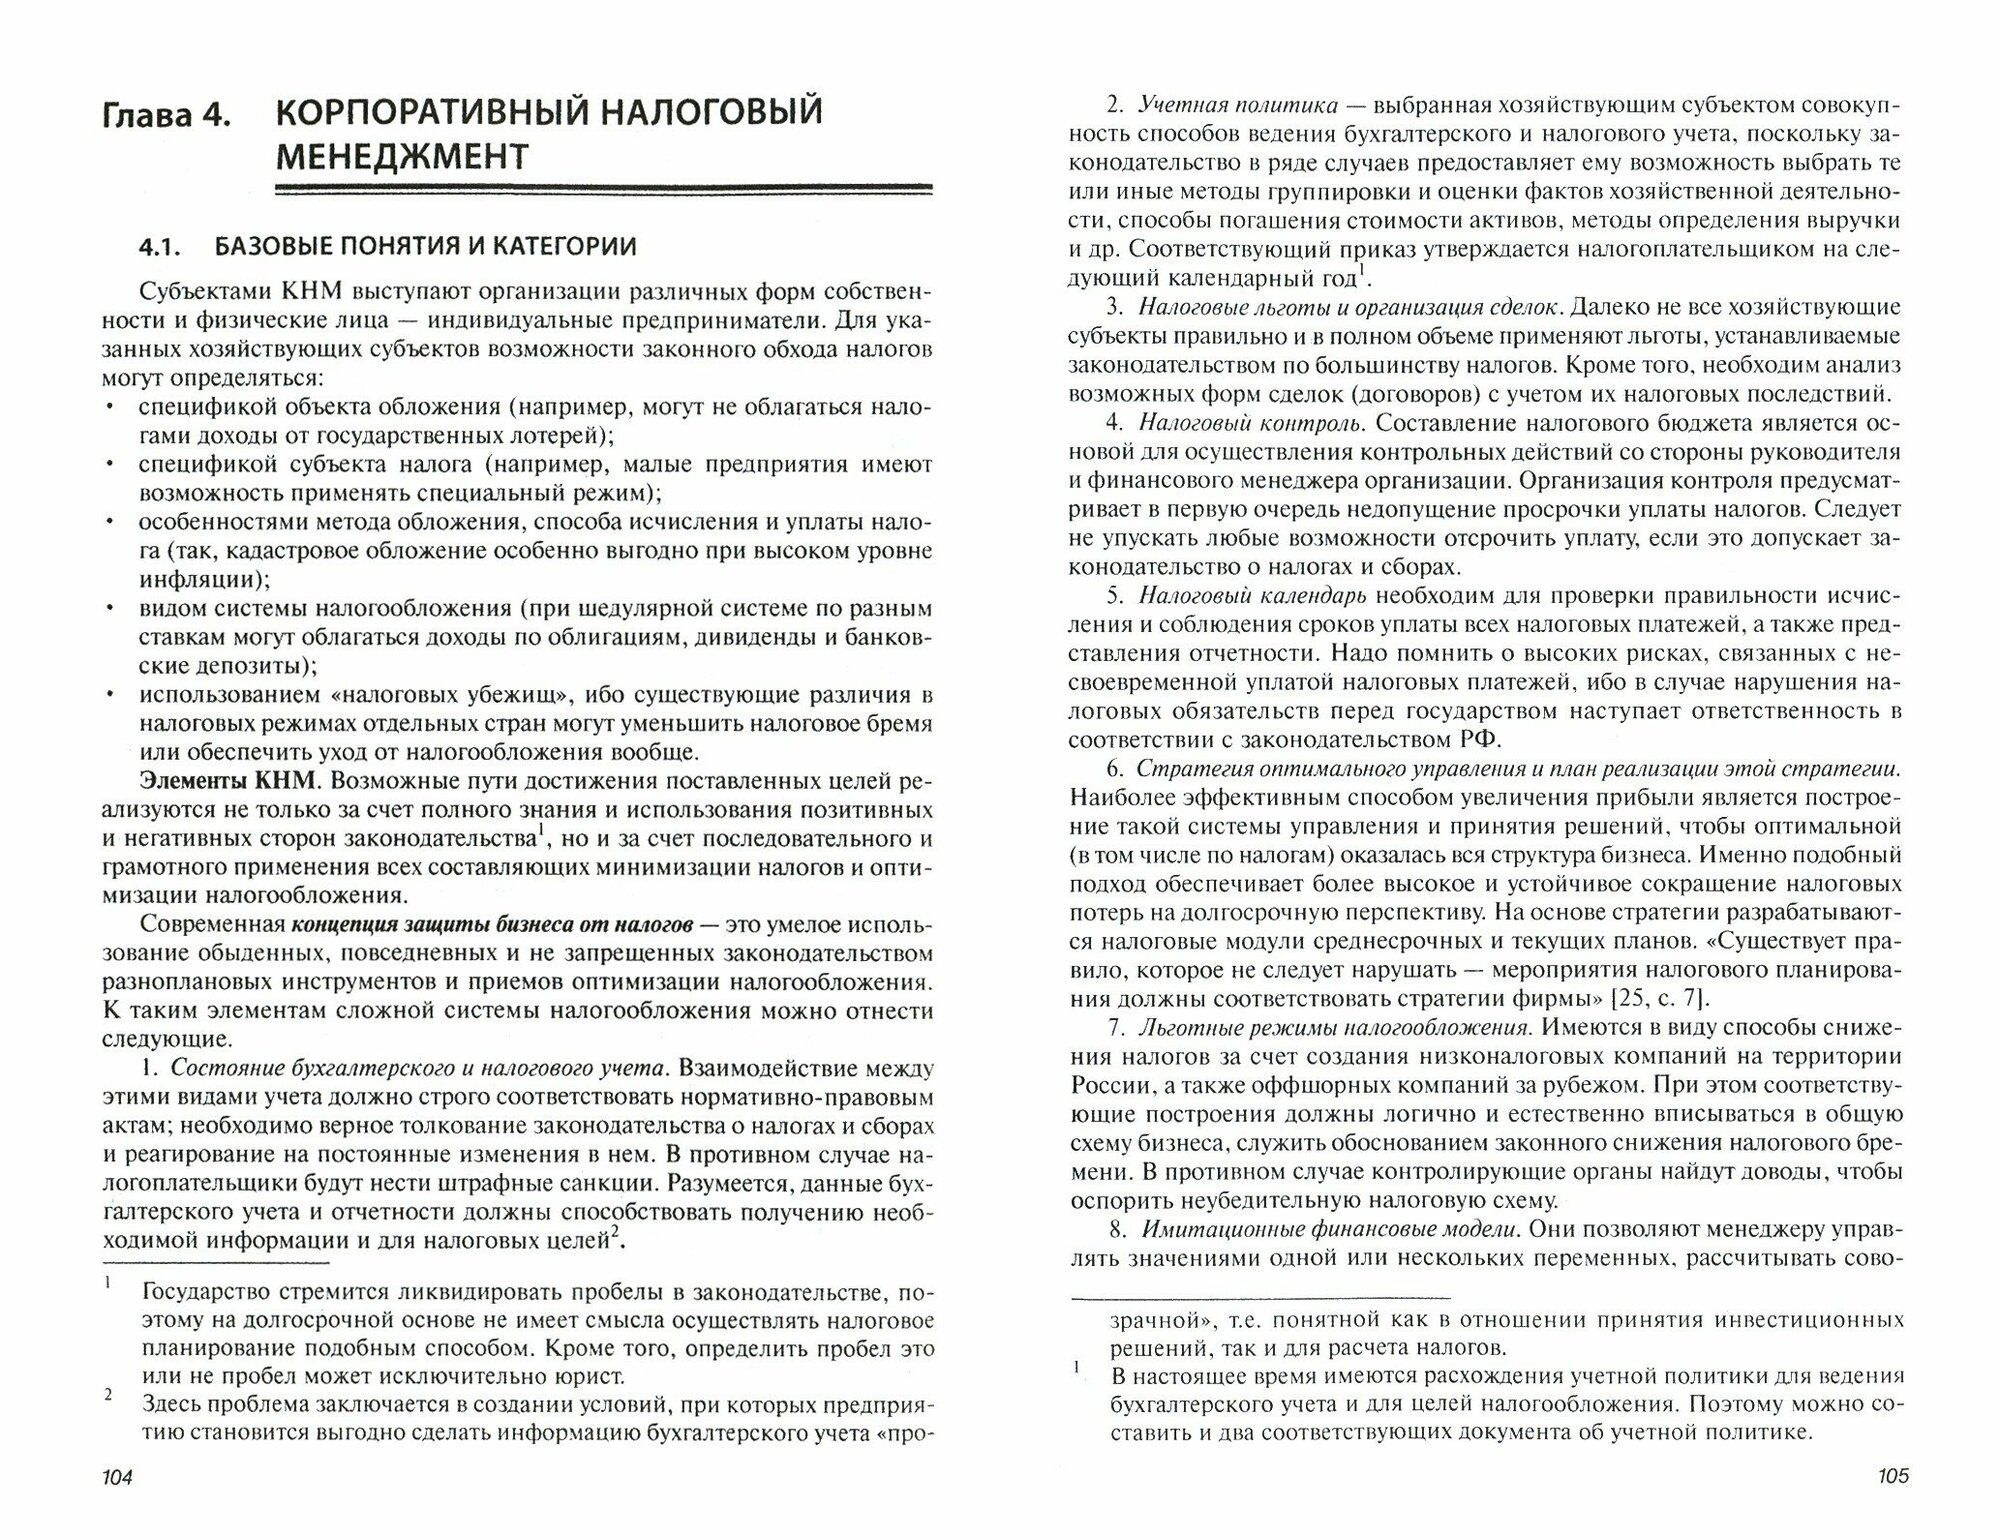 Налоговый менеджмент и налоговое планирование в России. Монография - фото №2